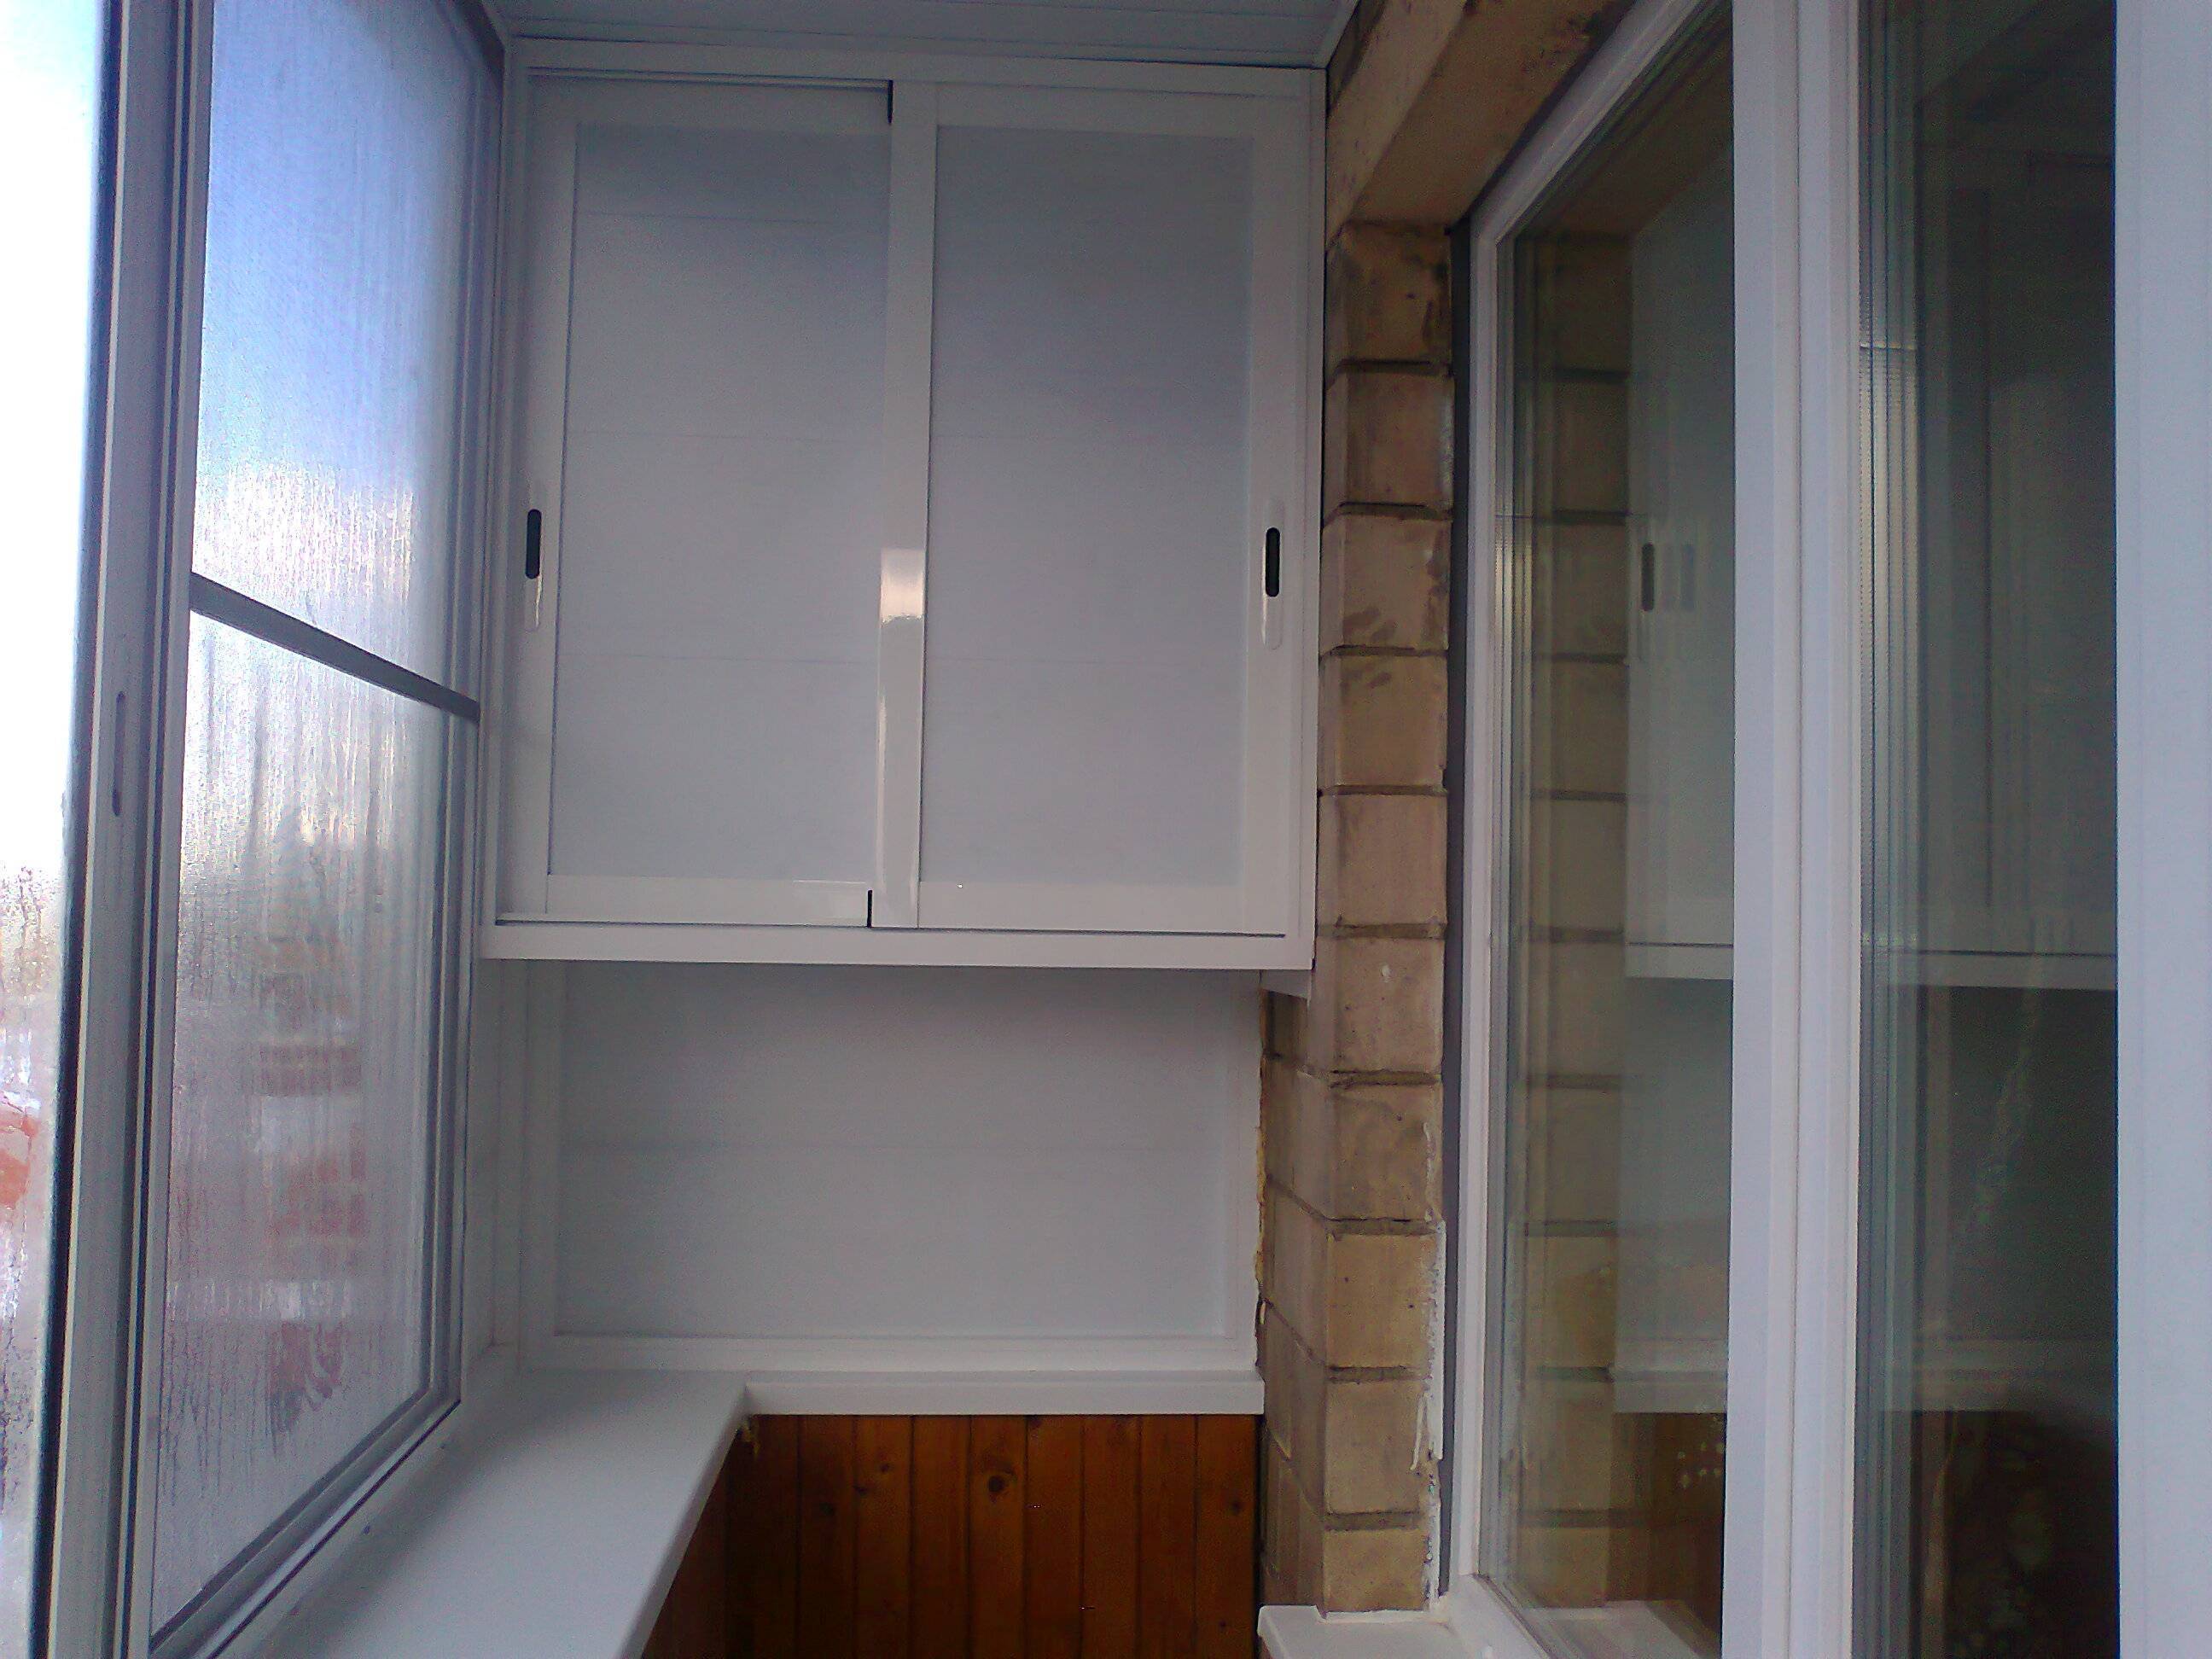 Шкаф на балкон своими руками: как сделать место для хранения на лоджии?